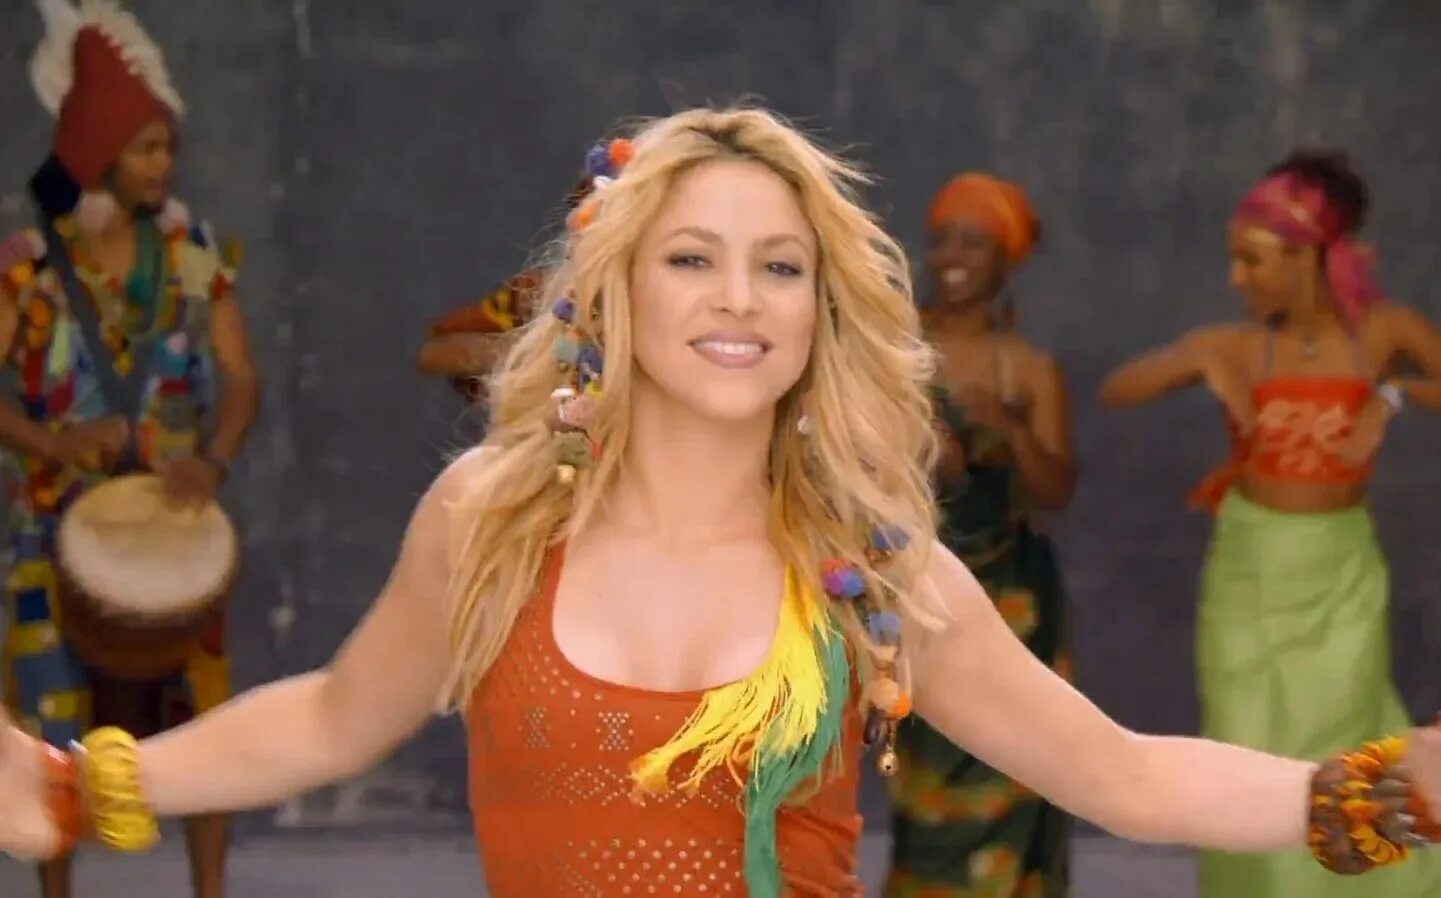 Waka waka africa. Shakira 2010 Waka Waka. Shakira 2010. Shakira, Freshlyground - Waka Waka. Shakira 2010 World Cup.